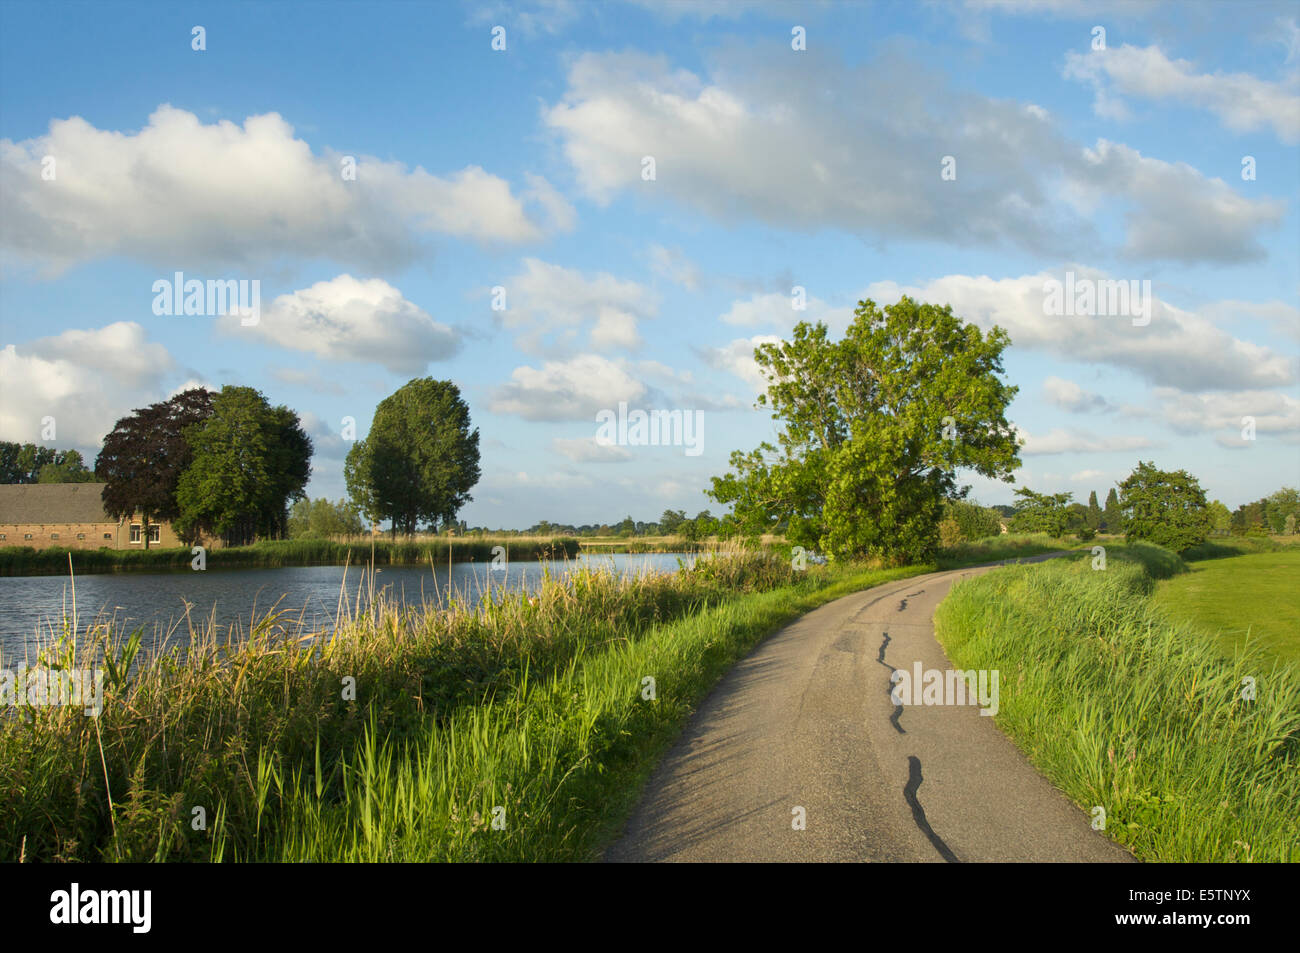 Petite route le long de la rivière Vecht près de Nederhorst den Berg sur une journée ensoleillée dans les Pays-Bas Banque D'Images